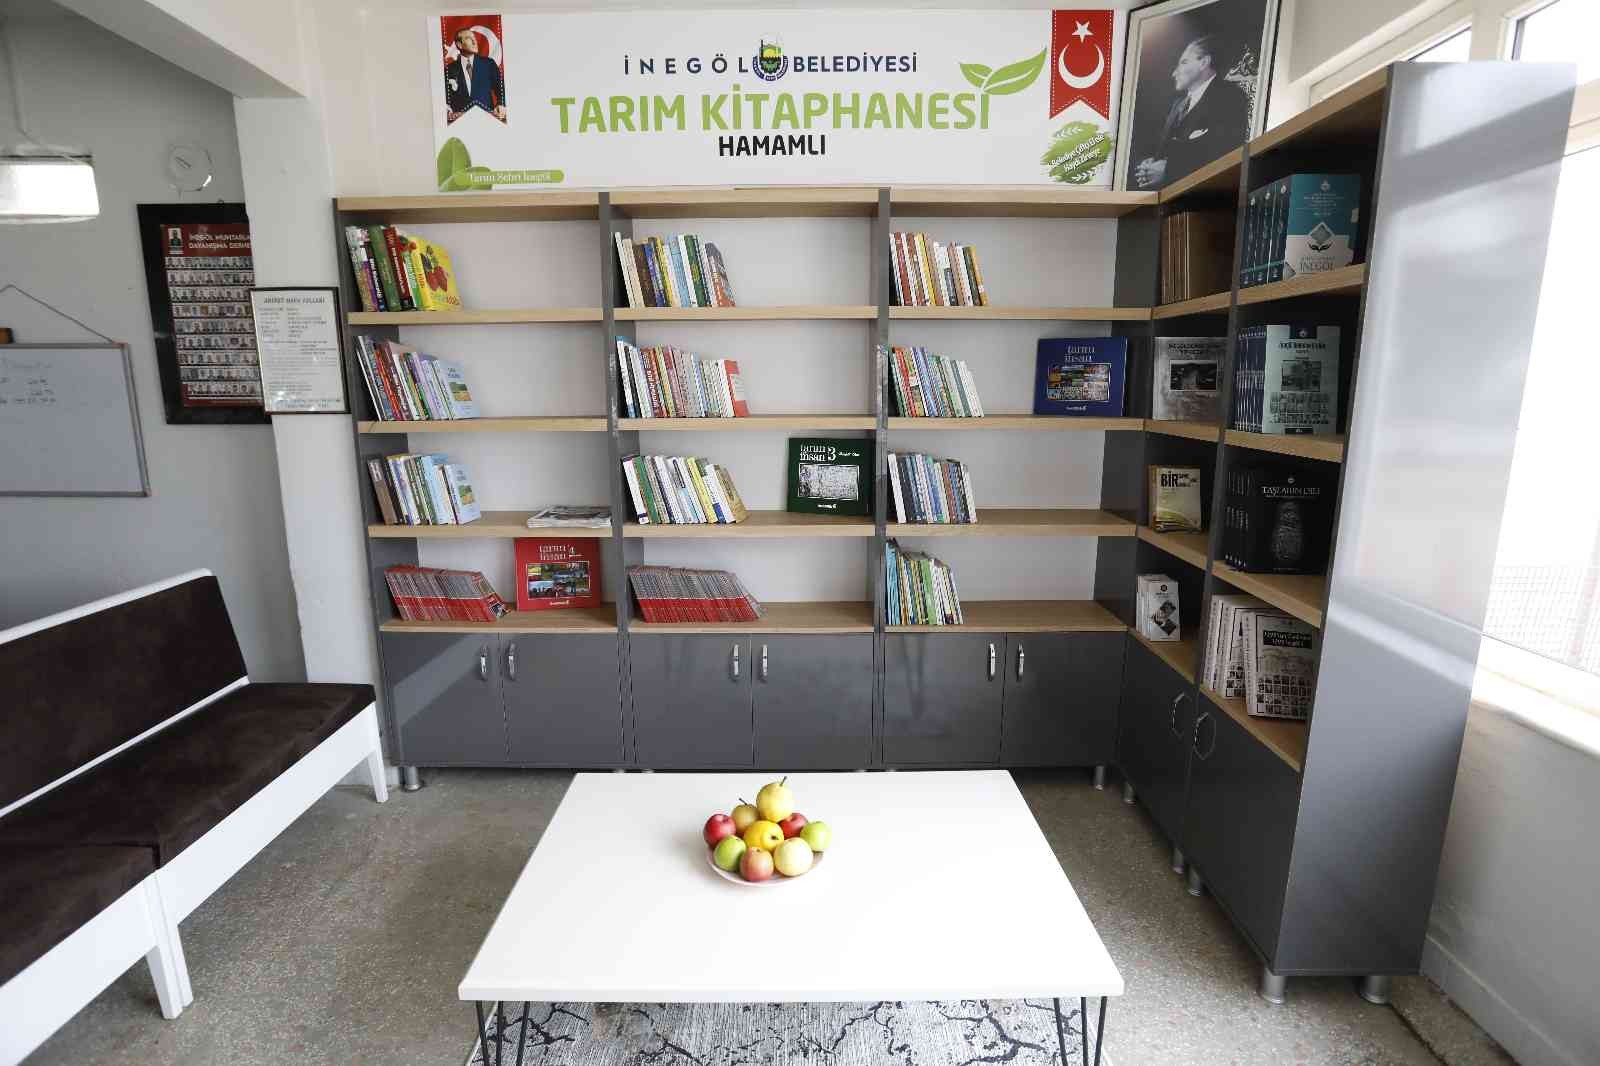 Türkiye’nin ilk tarım kitaphanesi açıldı #bursa